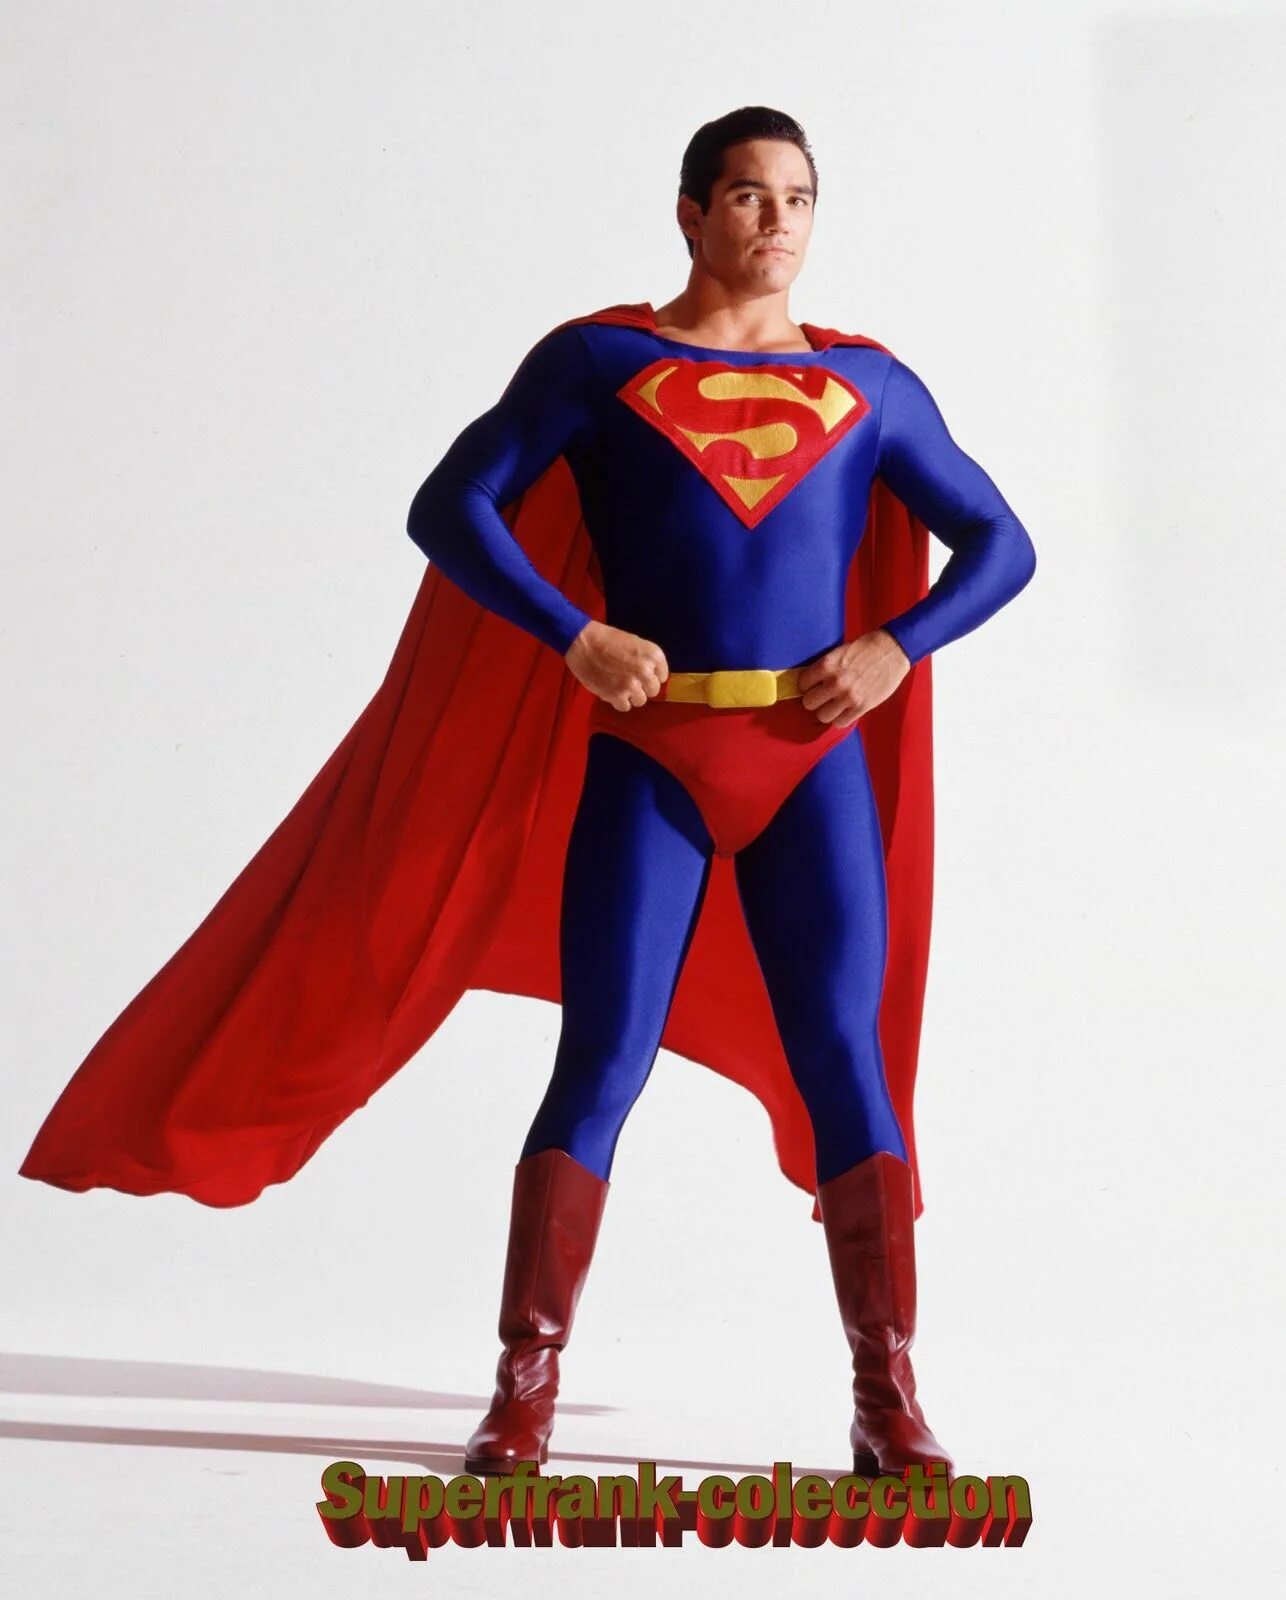 Герой. Dean Cain Superman. Супергерой. Супермен в обычной жизни. Супермен в полный рост.